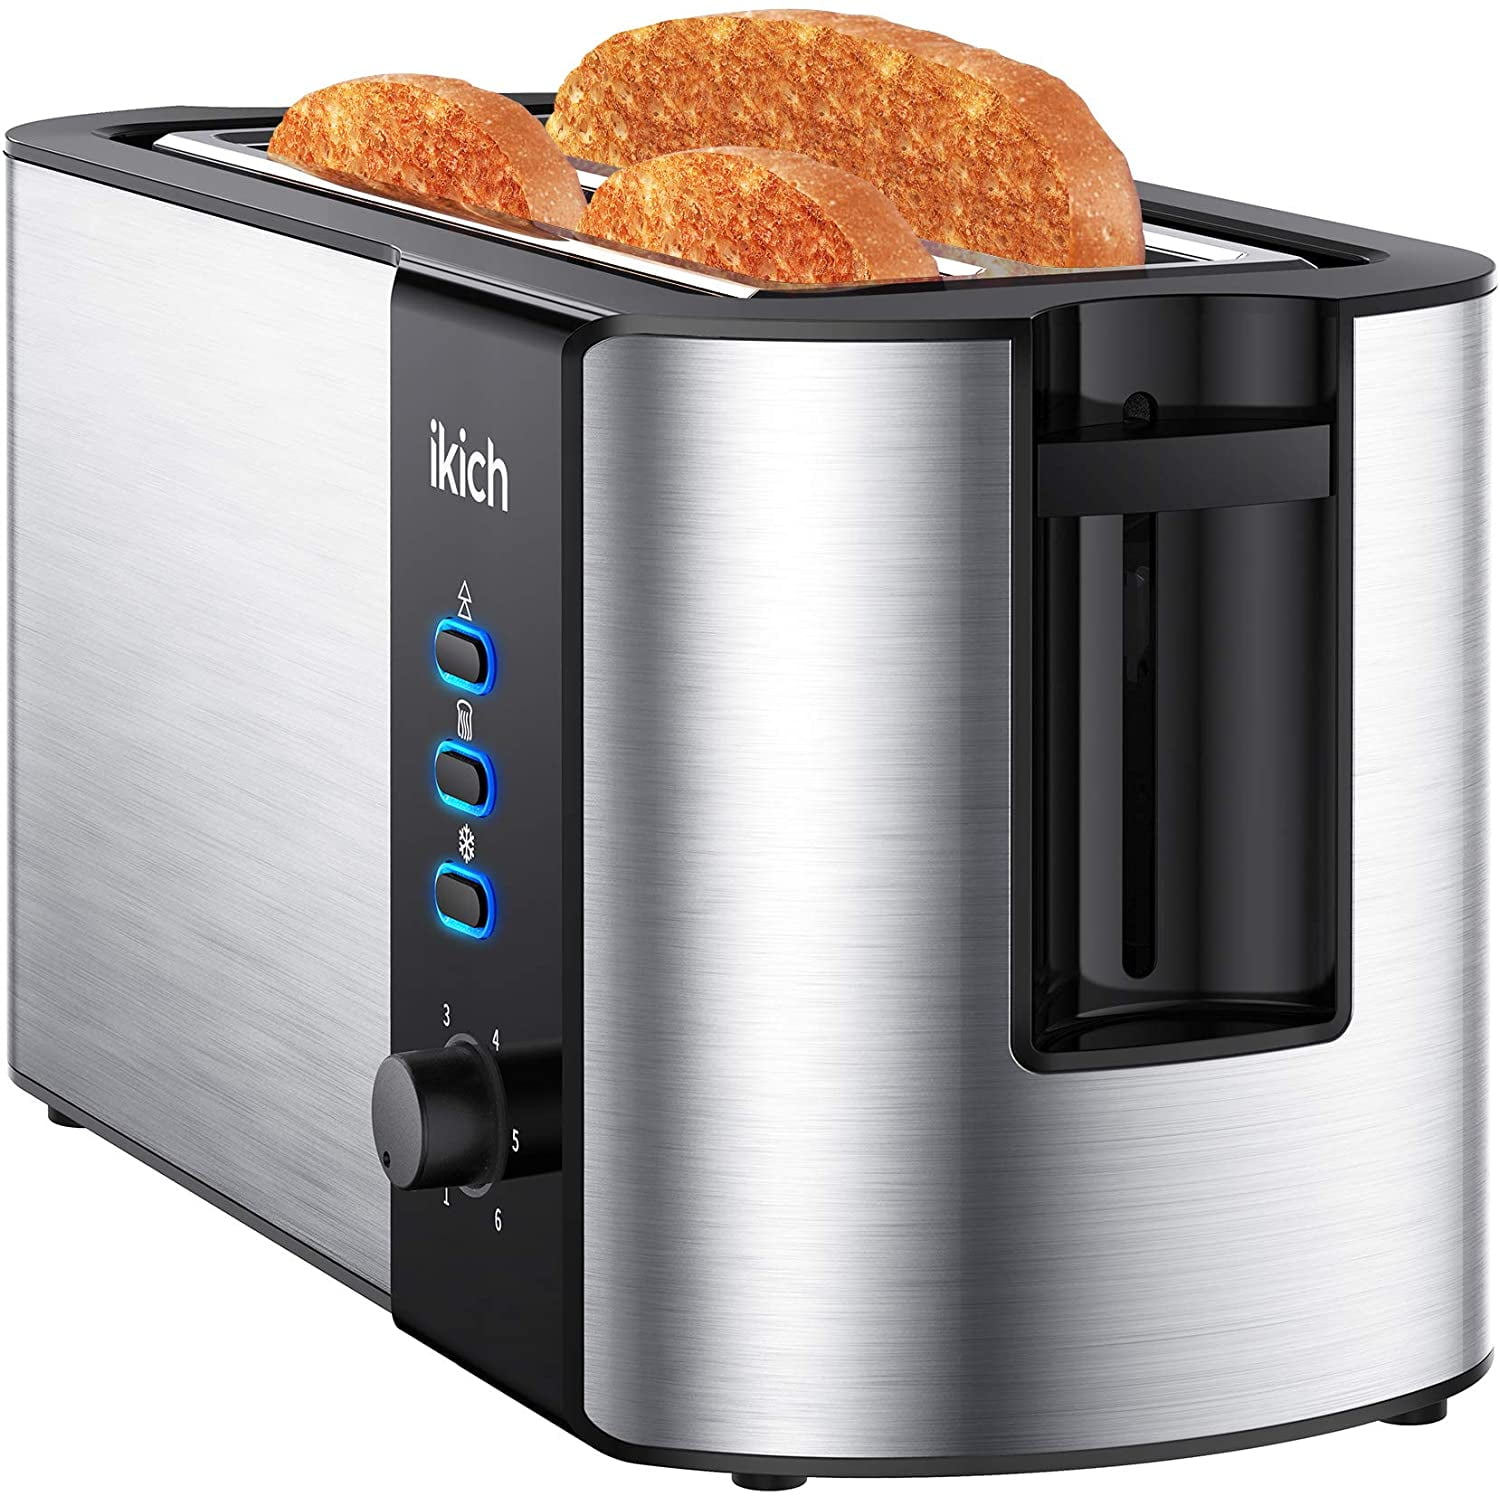 Mueller UltraToast Full Stainless Steel Toaster 4 Slice, Long